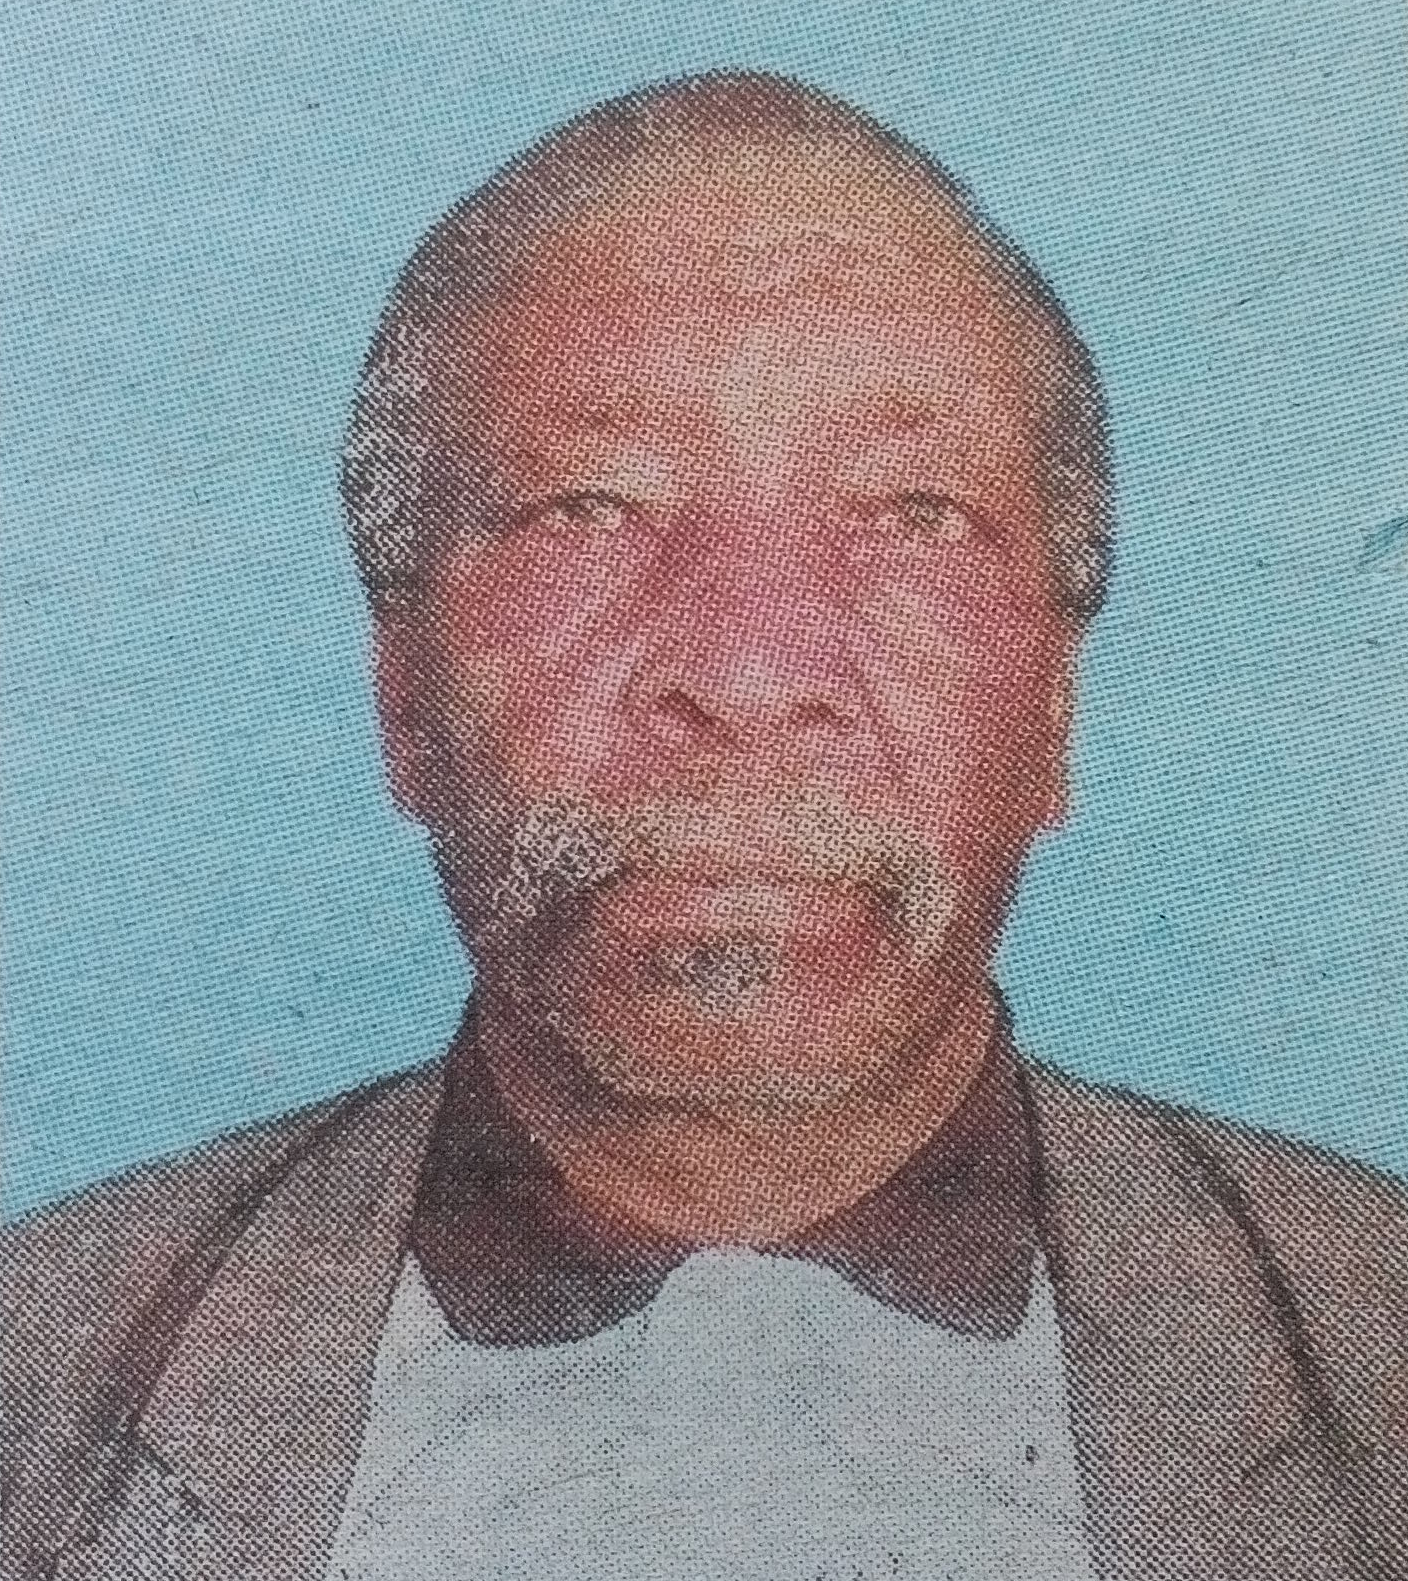 Obituary Image of Mwalimu Joses Mwindi